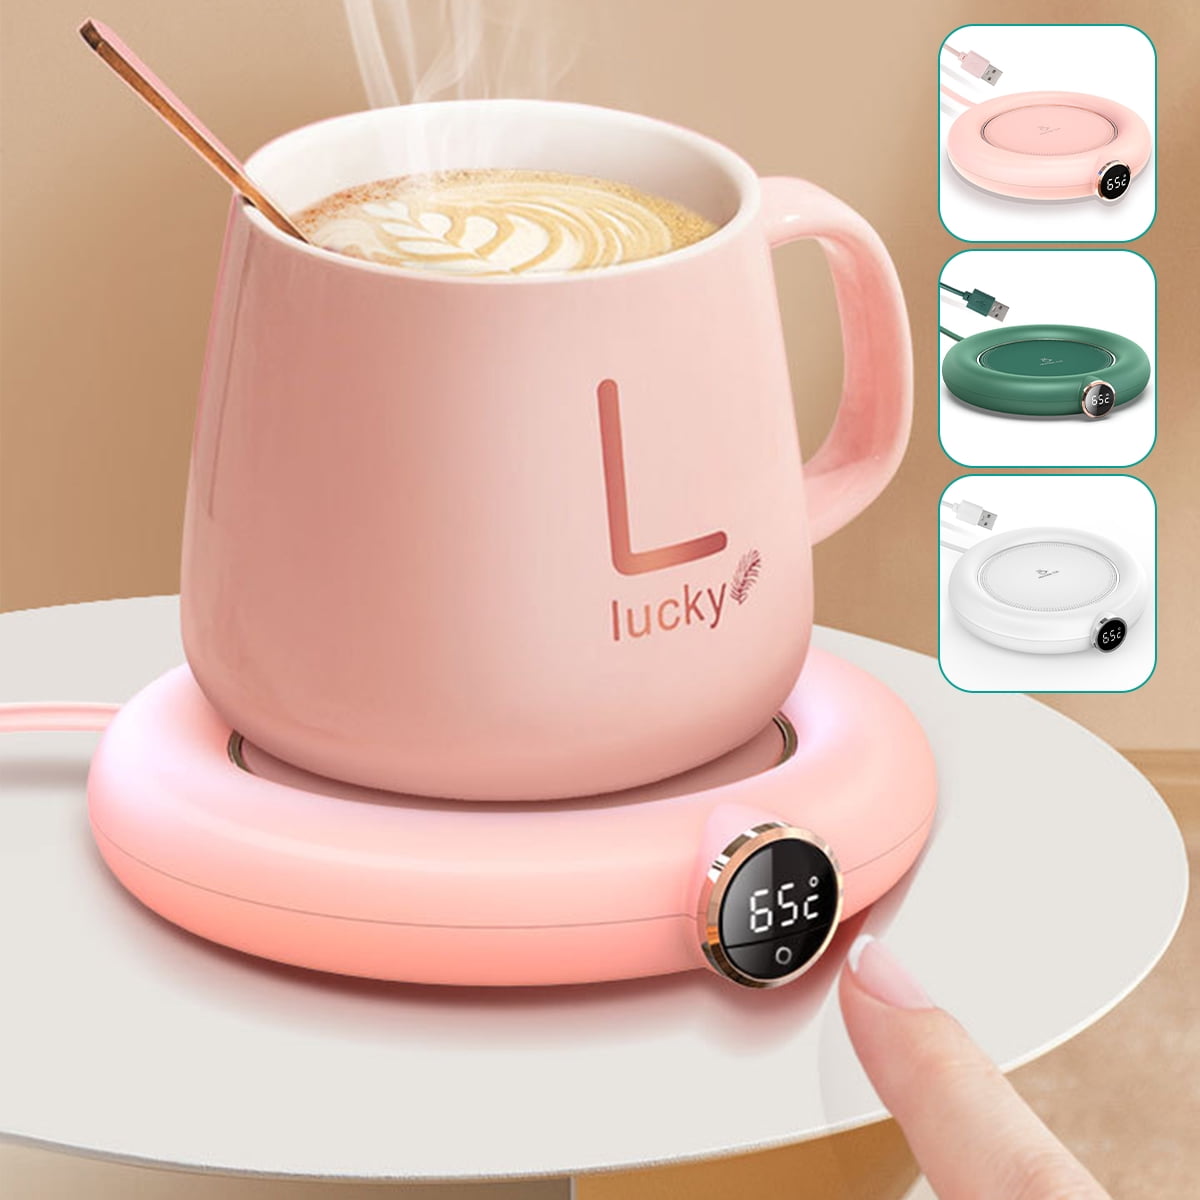 DANDELIONSKY Cup Warmer USB Coffee Mug Heating Pad 5W Compact